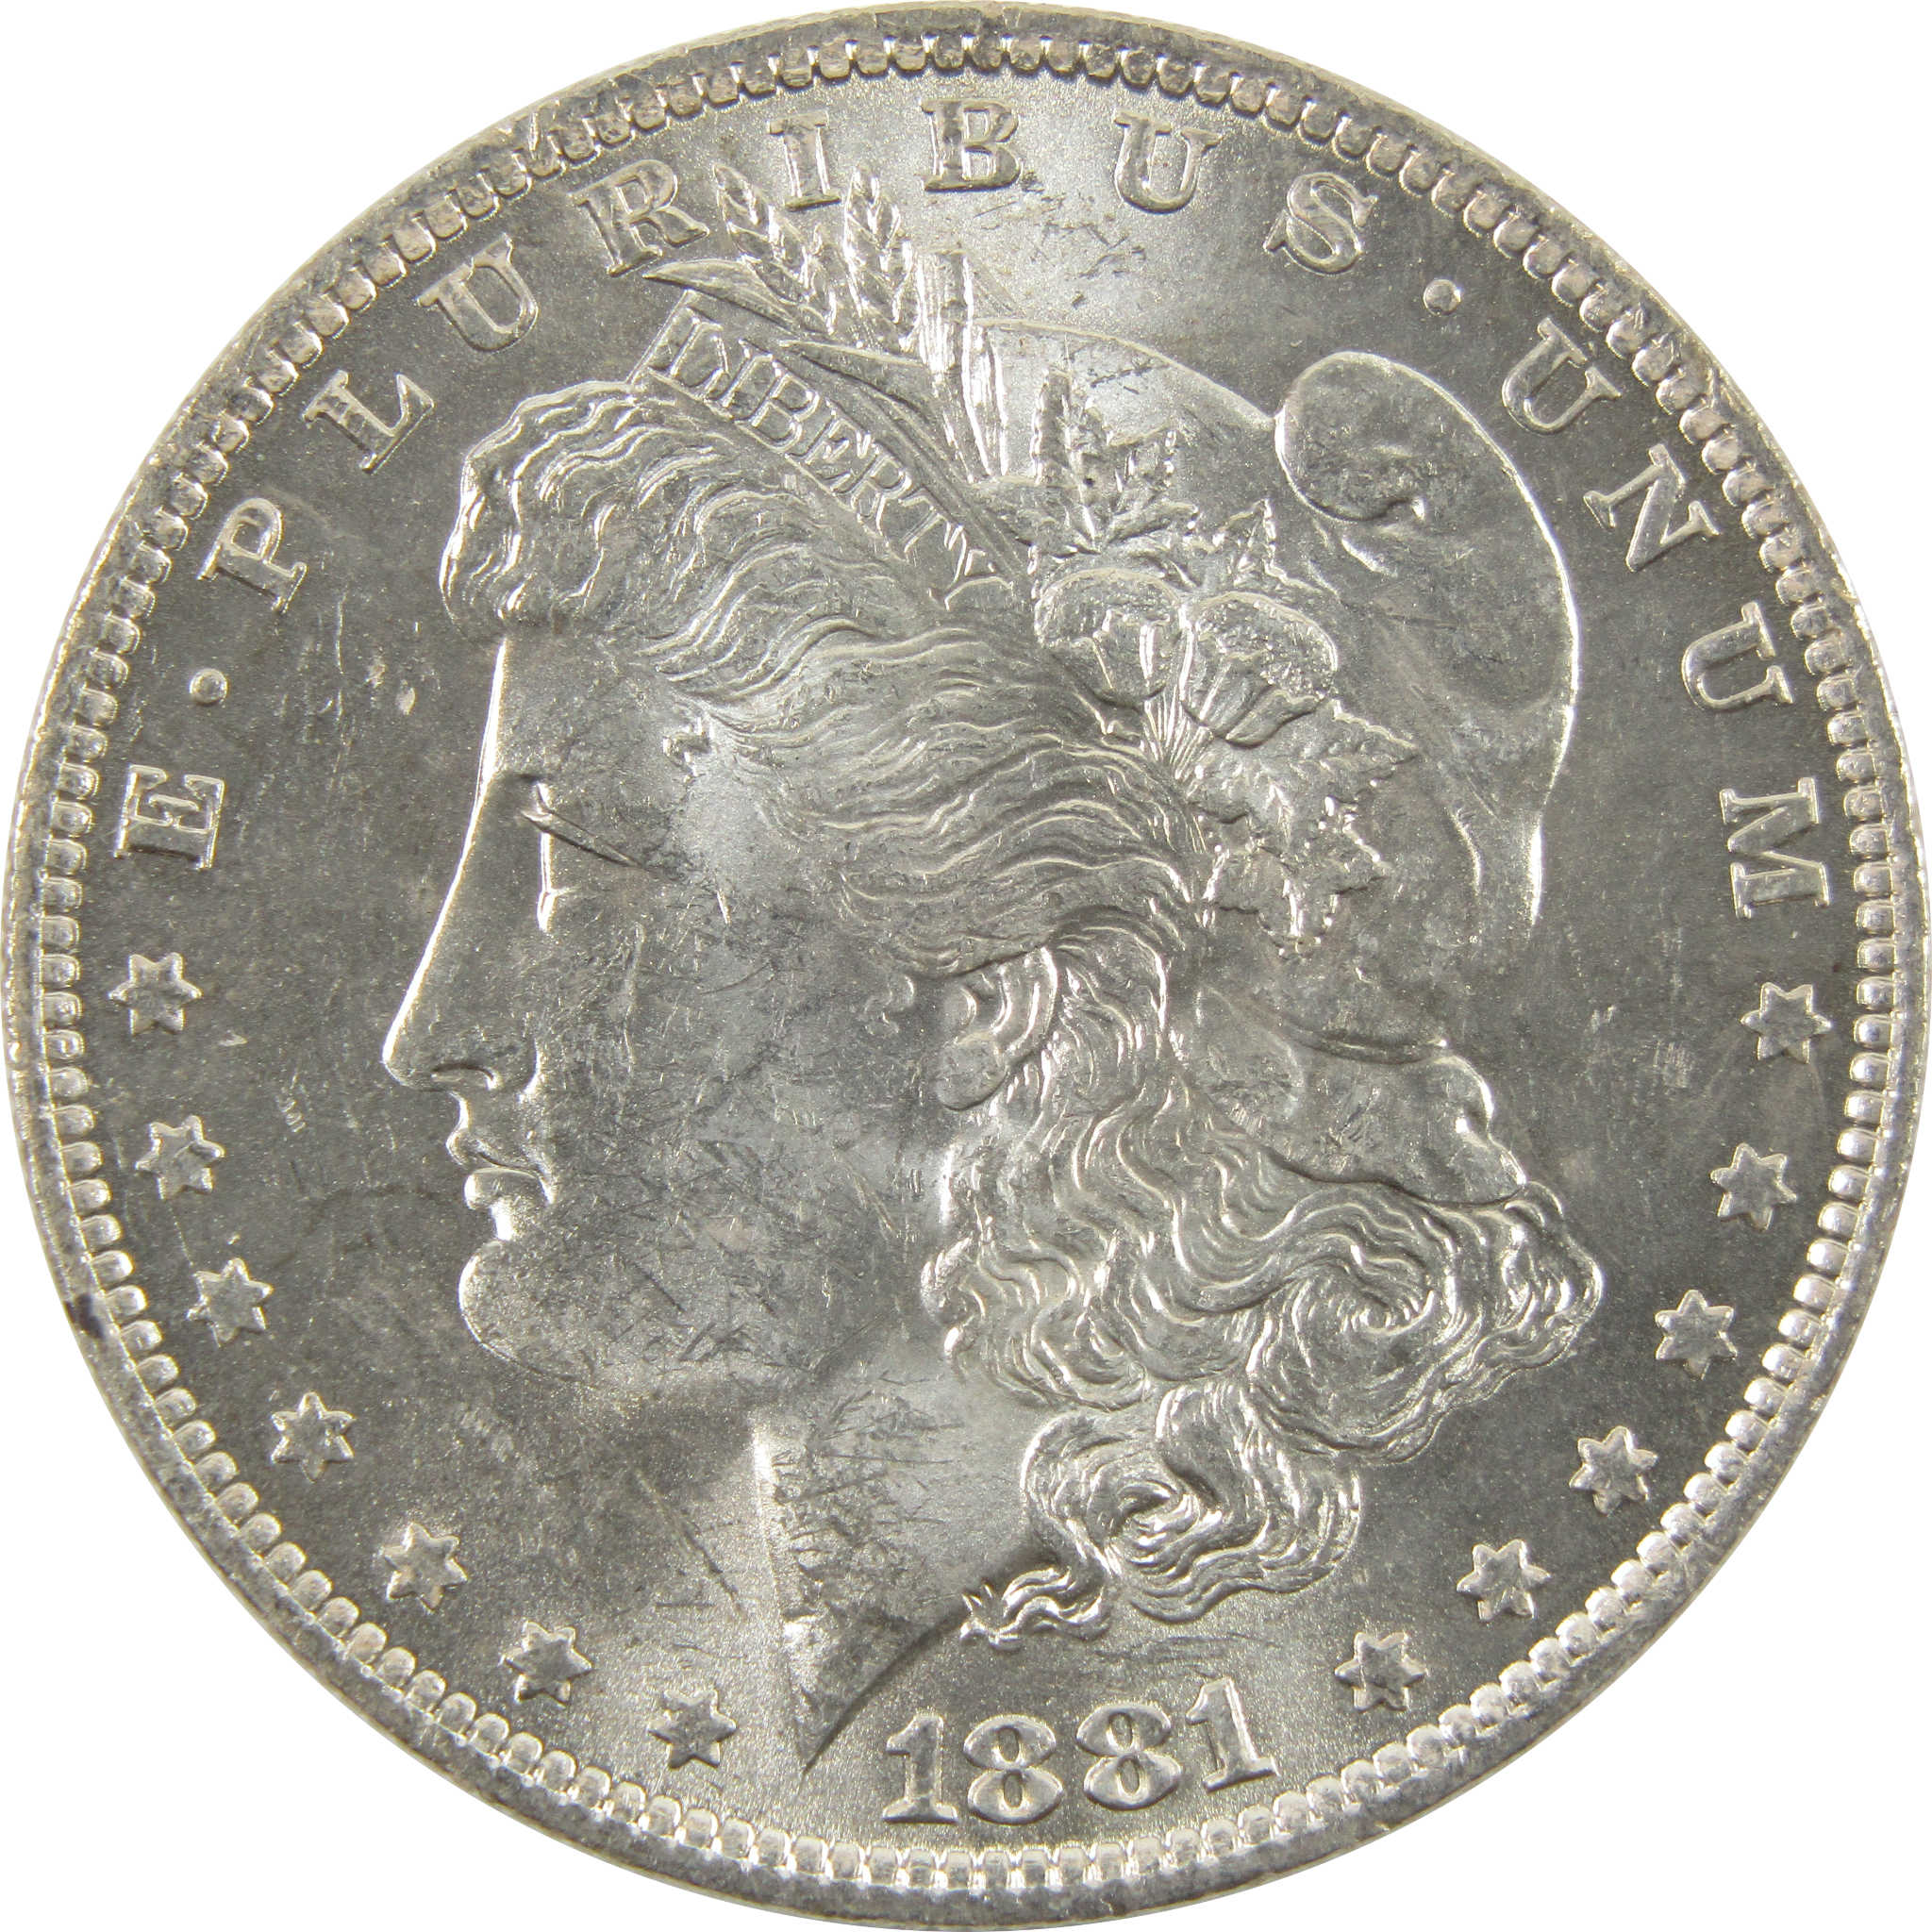 1881 O Morgan Dollar BU Uncirculated 90% Silver $1 Coin SKU:I10427 - Morgan coin - Morgan silver dollar - Morgan silver dollar for sale - Profile Coins &amp; Collectibles